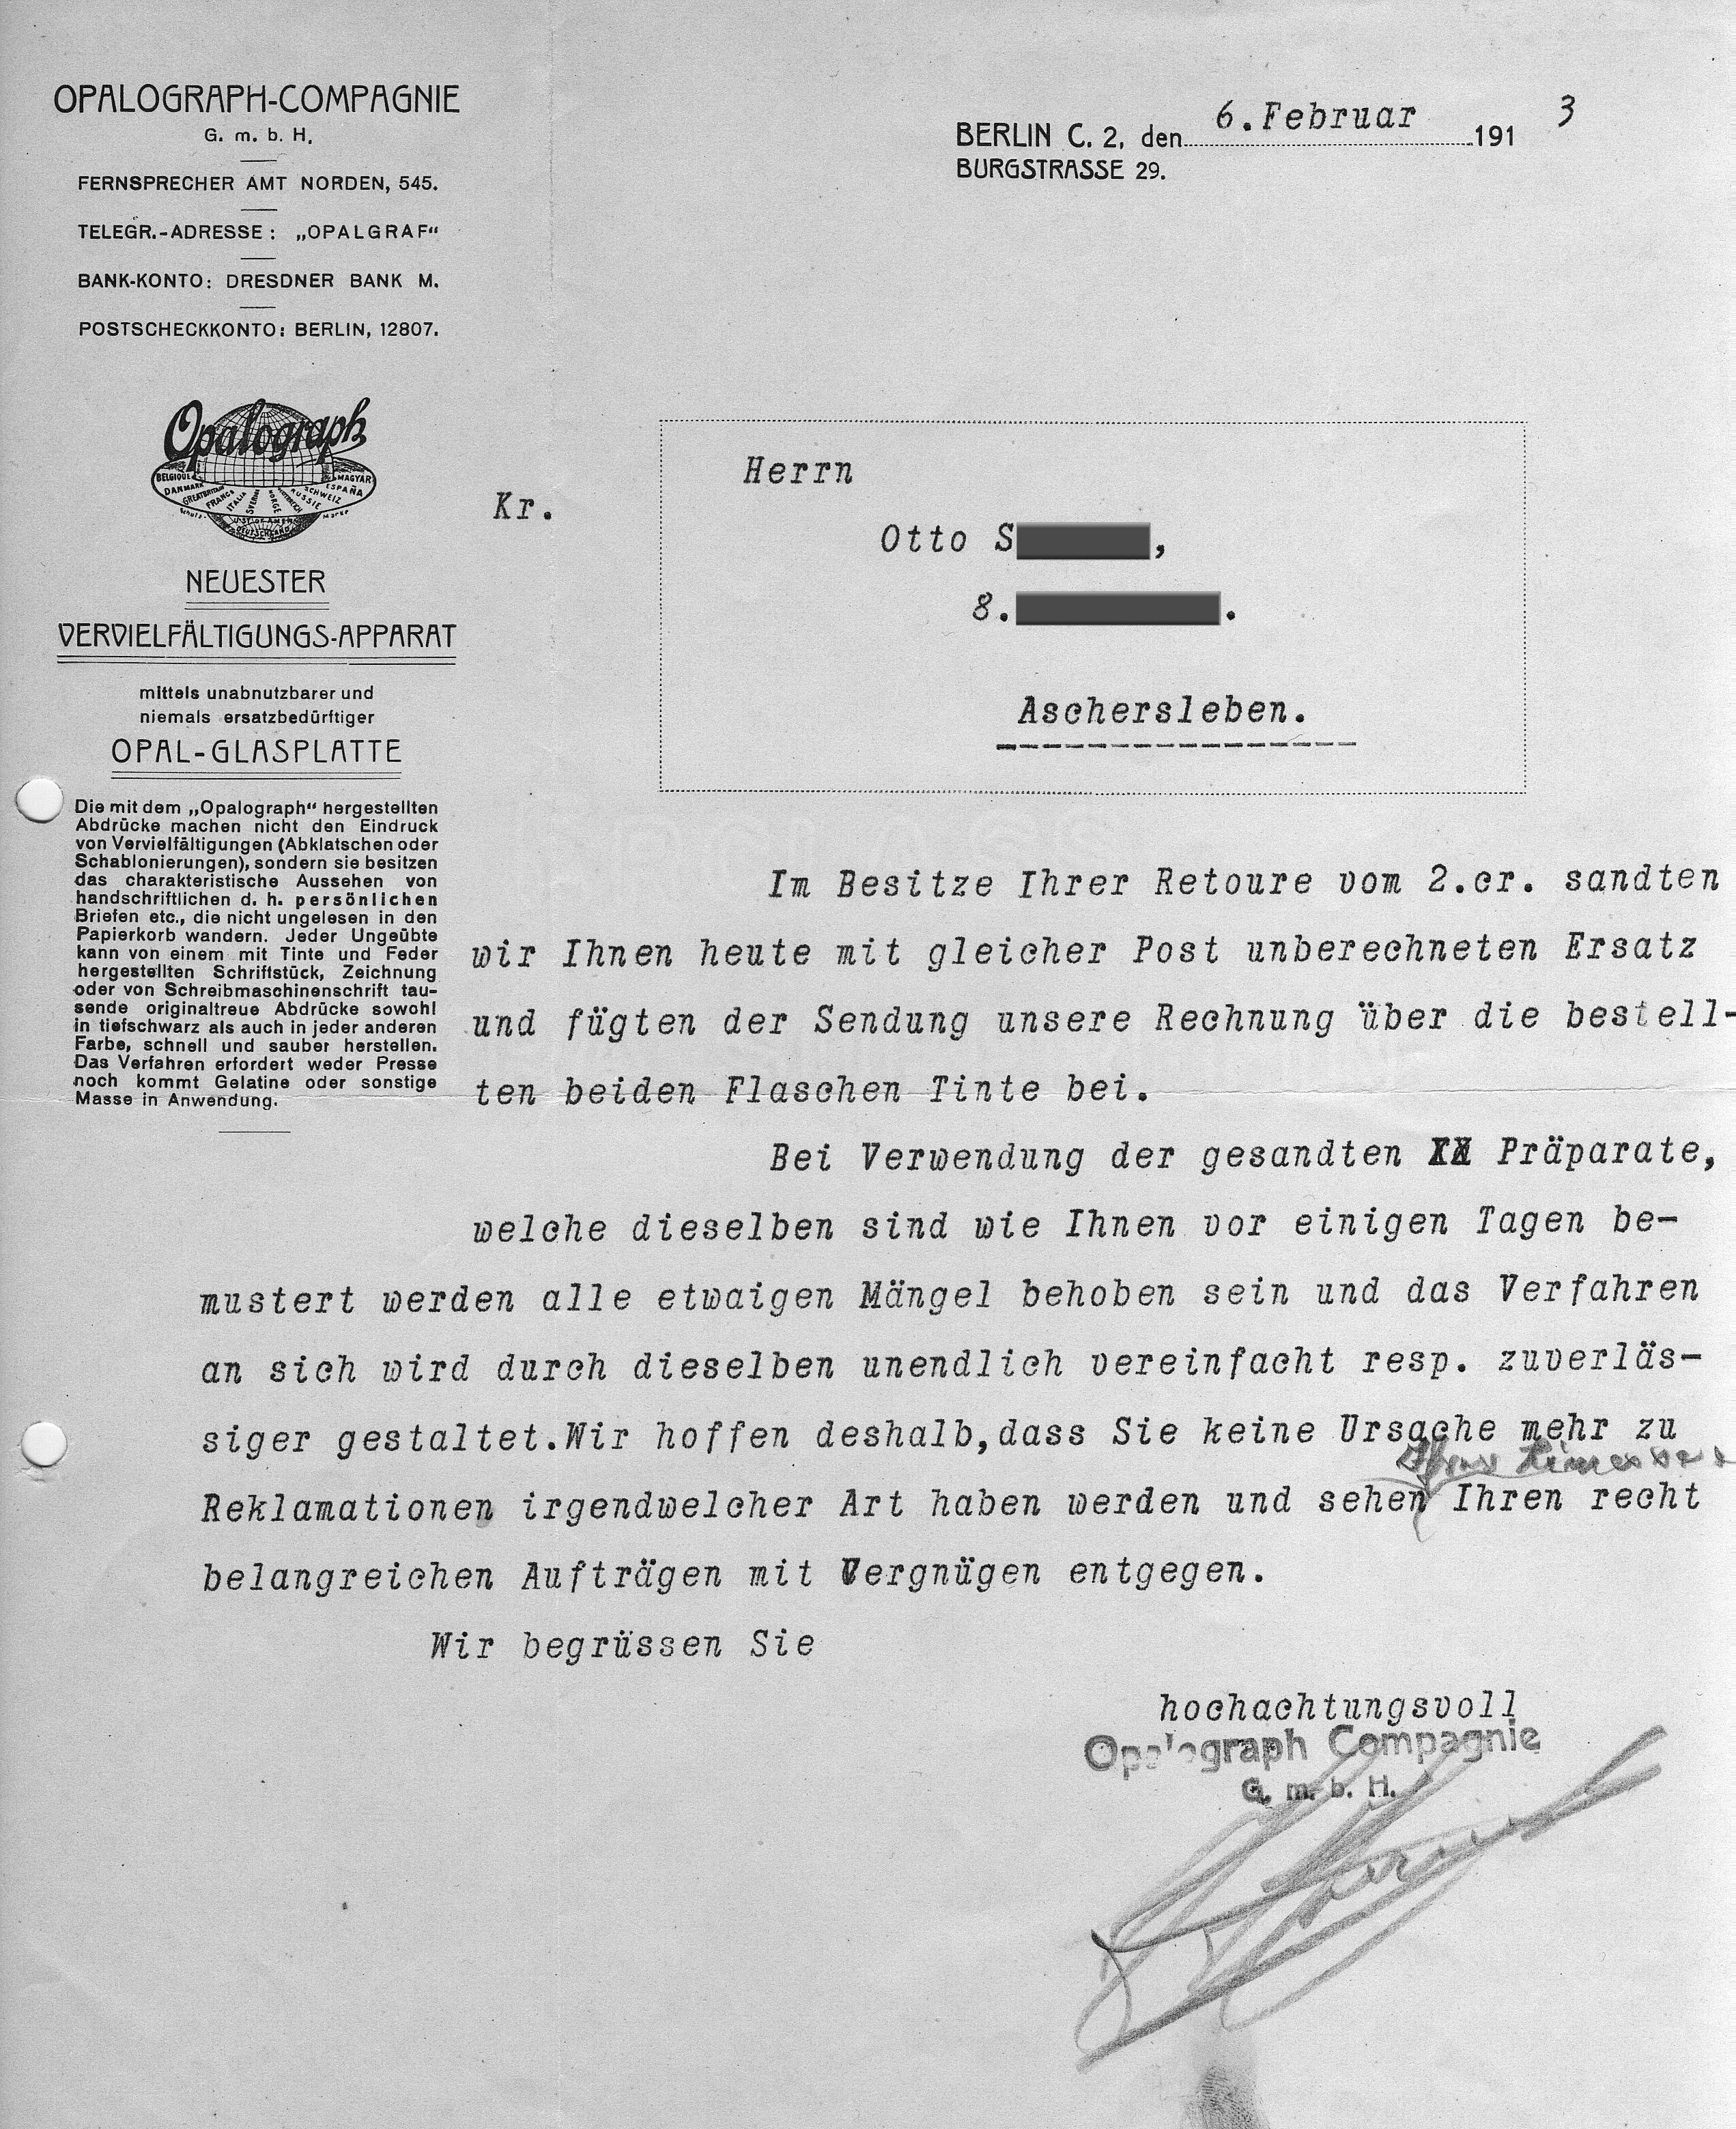 Kundenreklamation gerichtet an OPALOGRAPH COMPAGNIE vom 6.2.1913, gelie-ferter Chemikalien zur Vervielfältigung, Privatbesitz